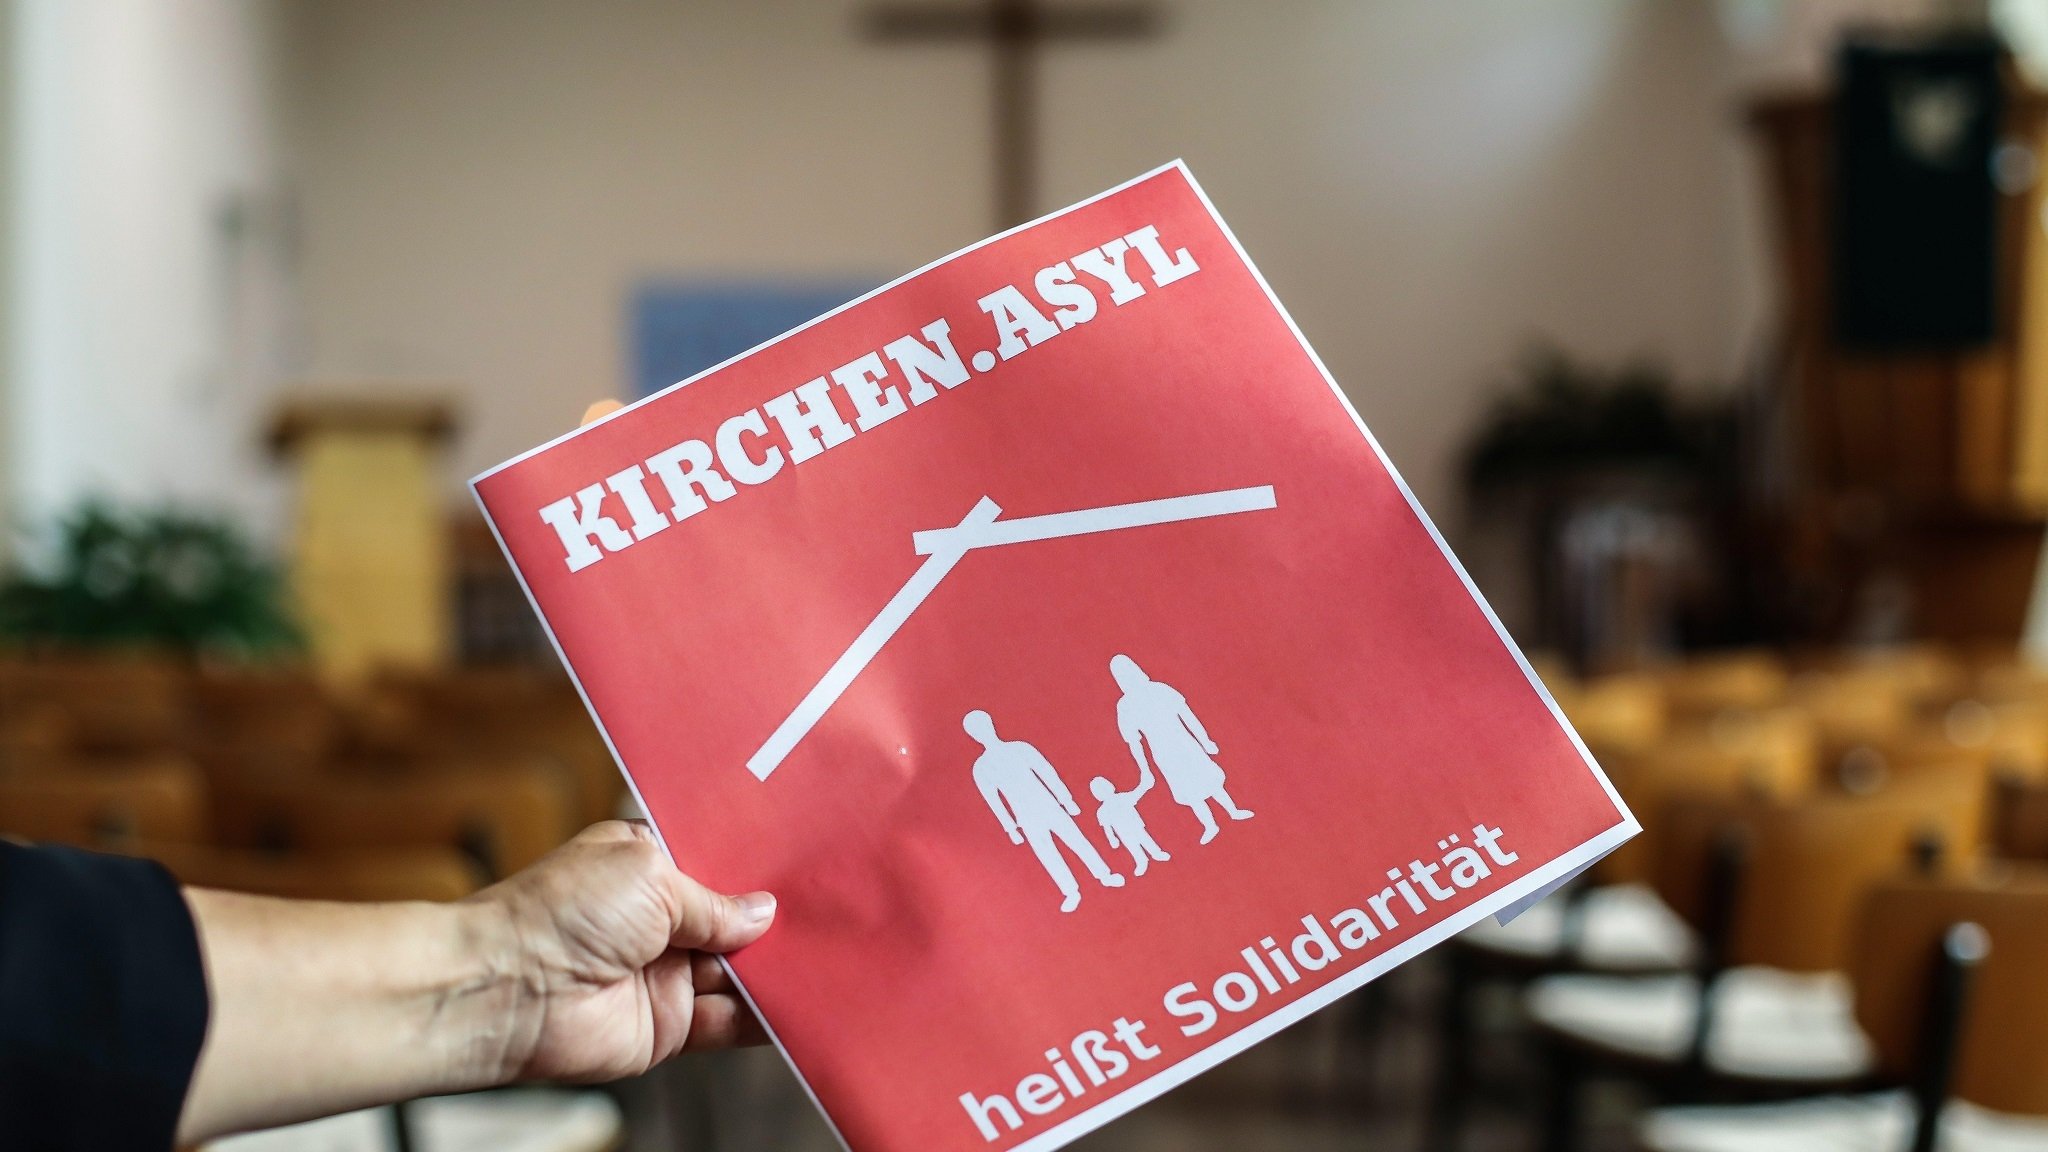 "Kirchenasyl heisst Solidarität" heißt es auf einem Schild